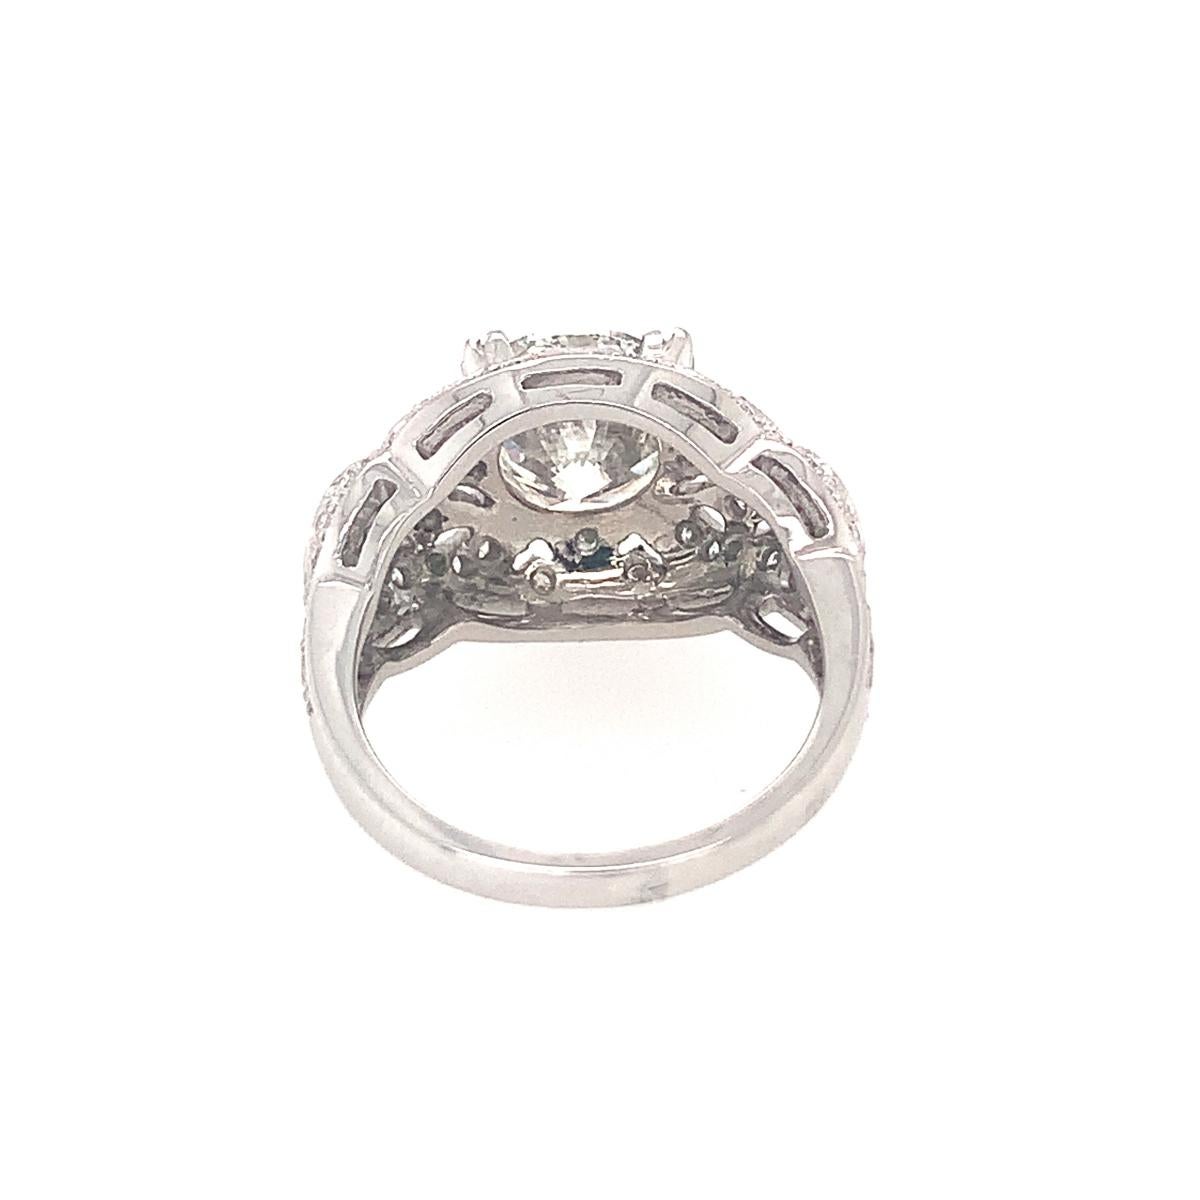 3 carat platinum engagement ring